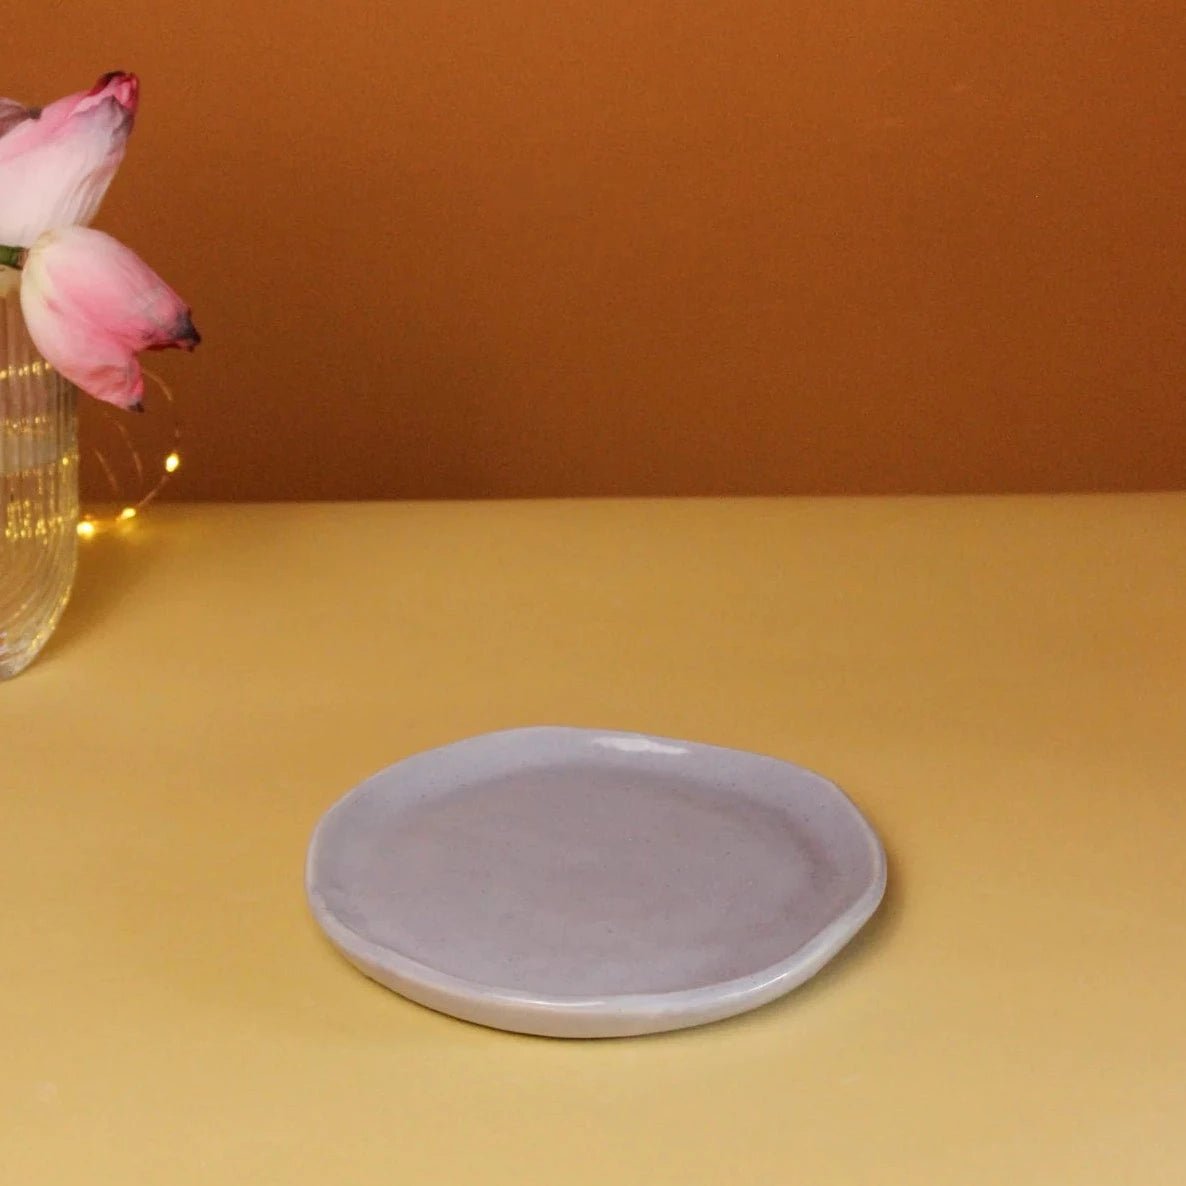 Ceramic 10" Dinner Plate